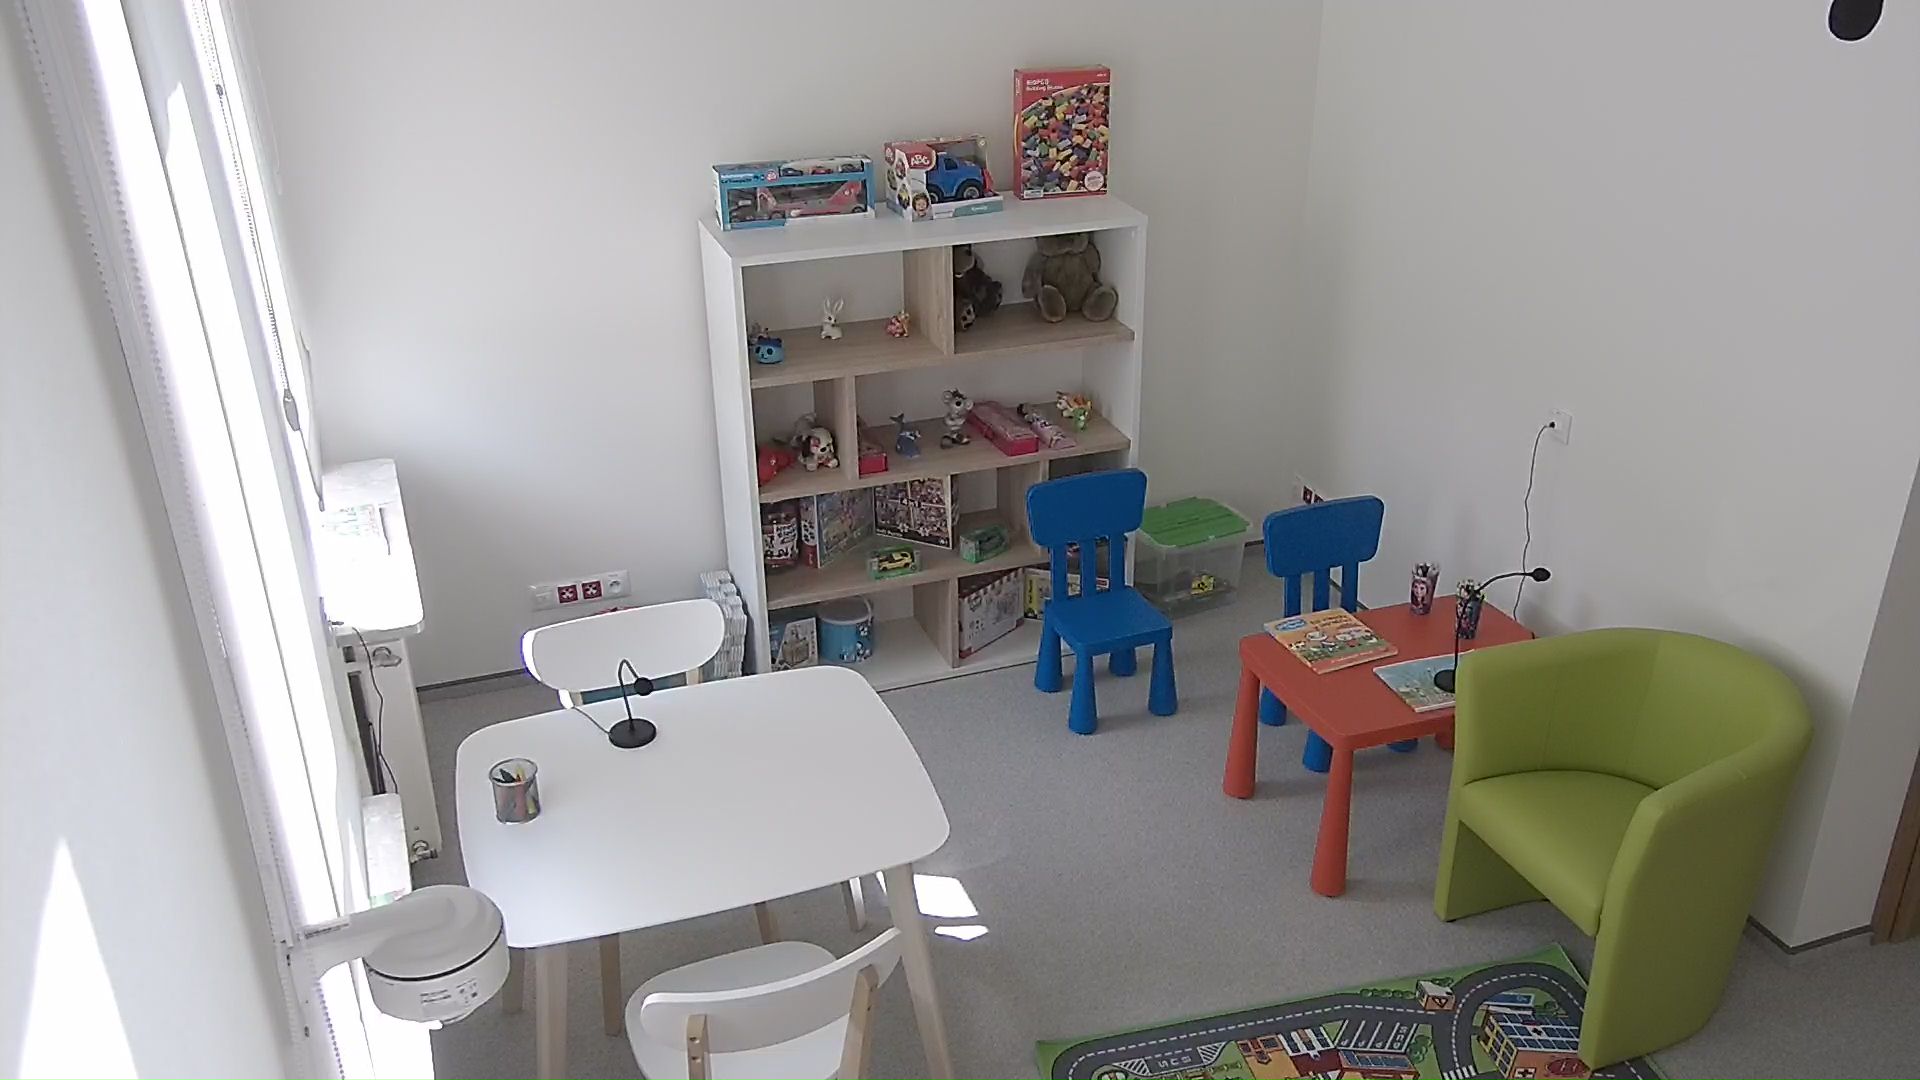 Zdjęcie przedstawia przyjazny pokój przesłuchań. Po lewej stronie biały stolik z 2 białymi krzesłami stojącymi naprzeciwko siebie, po dwóch stronach stolika. Stolik i krzesła są w rozmiarze umożliwiającym siedzenie osobom dorosłym. Po prawej stronie czerwony stolik dla małych dzieci i 2 niebieskie krzesełka dostosowane rozmiarem do stolika. Przed stolikiem stoi zielony fotel w rozmiarze umożliwiającym siedzenie osobom dorosłym. Między stolikami znajduje się przestrzeń umożliwiająca przejście. Z tyłu przy ścianie znajduje się regał z 4 półkami na których ustawione są różne zabawki.